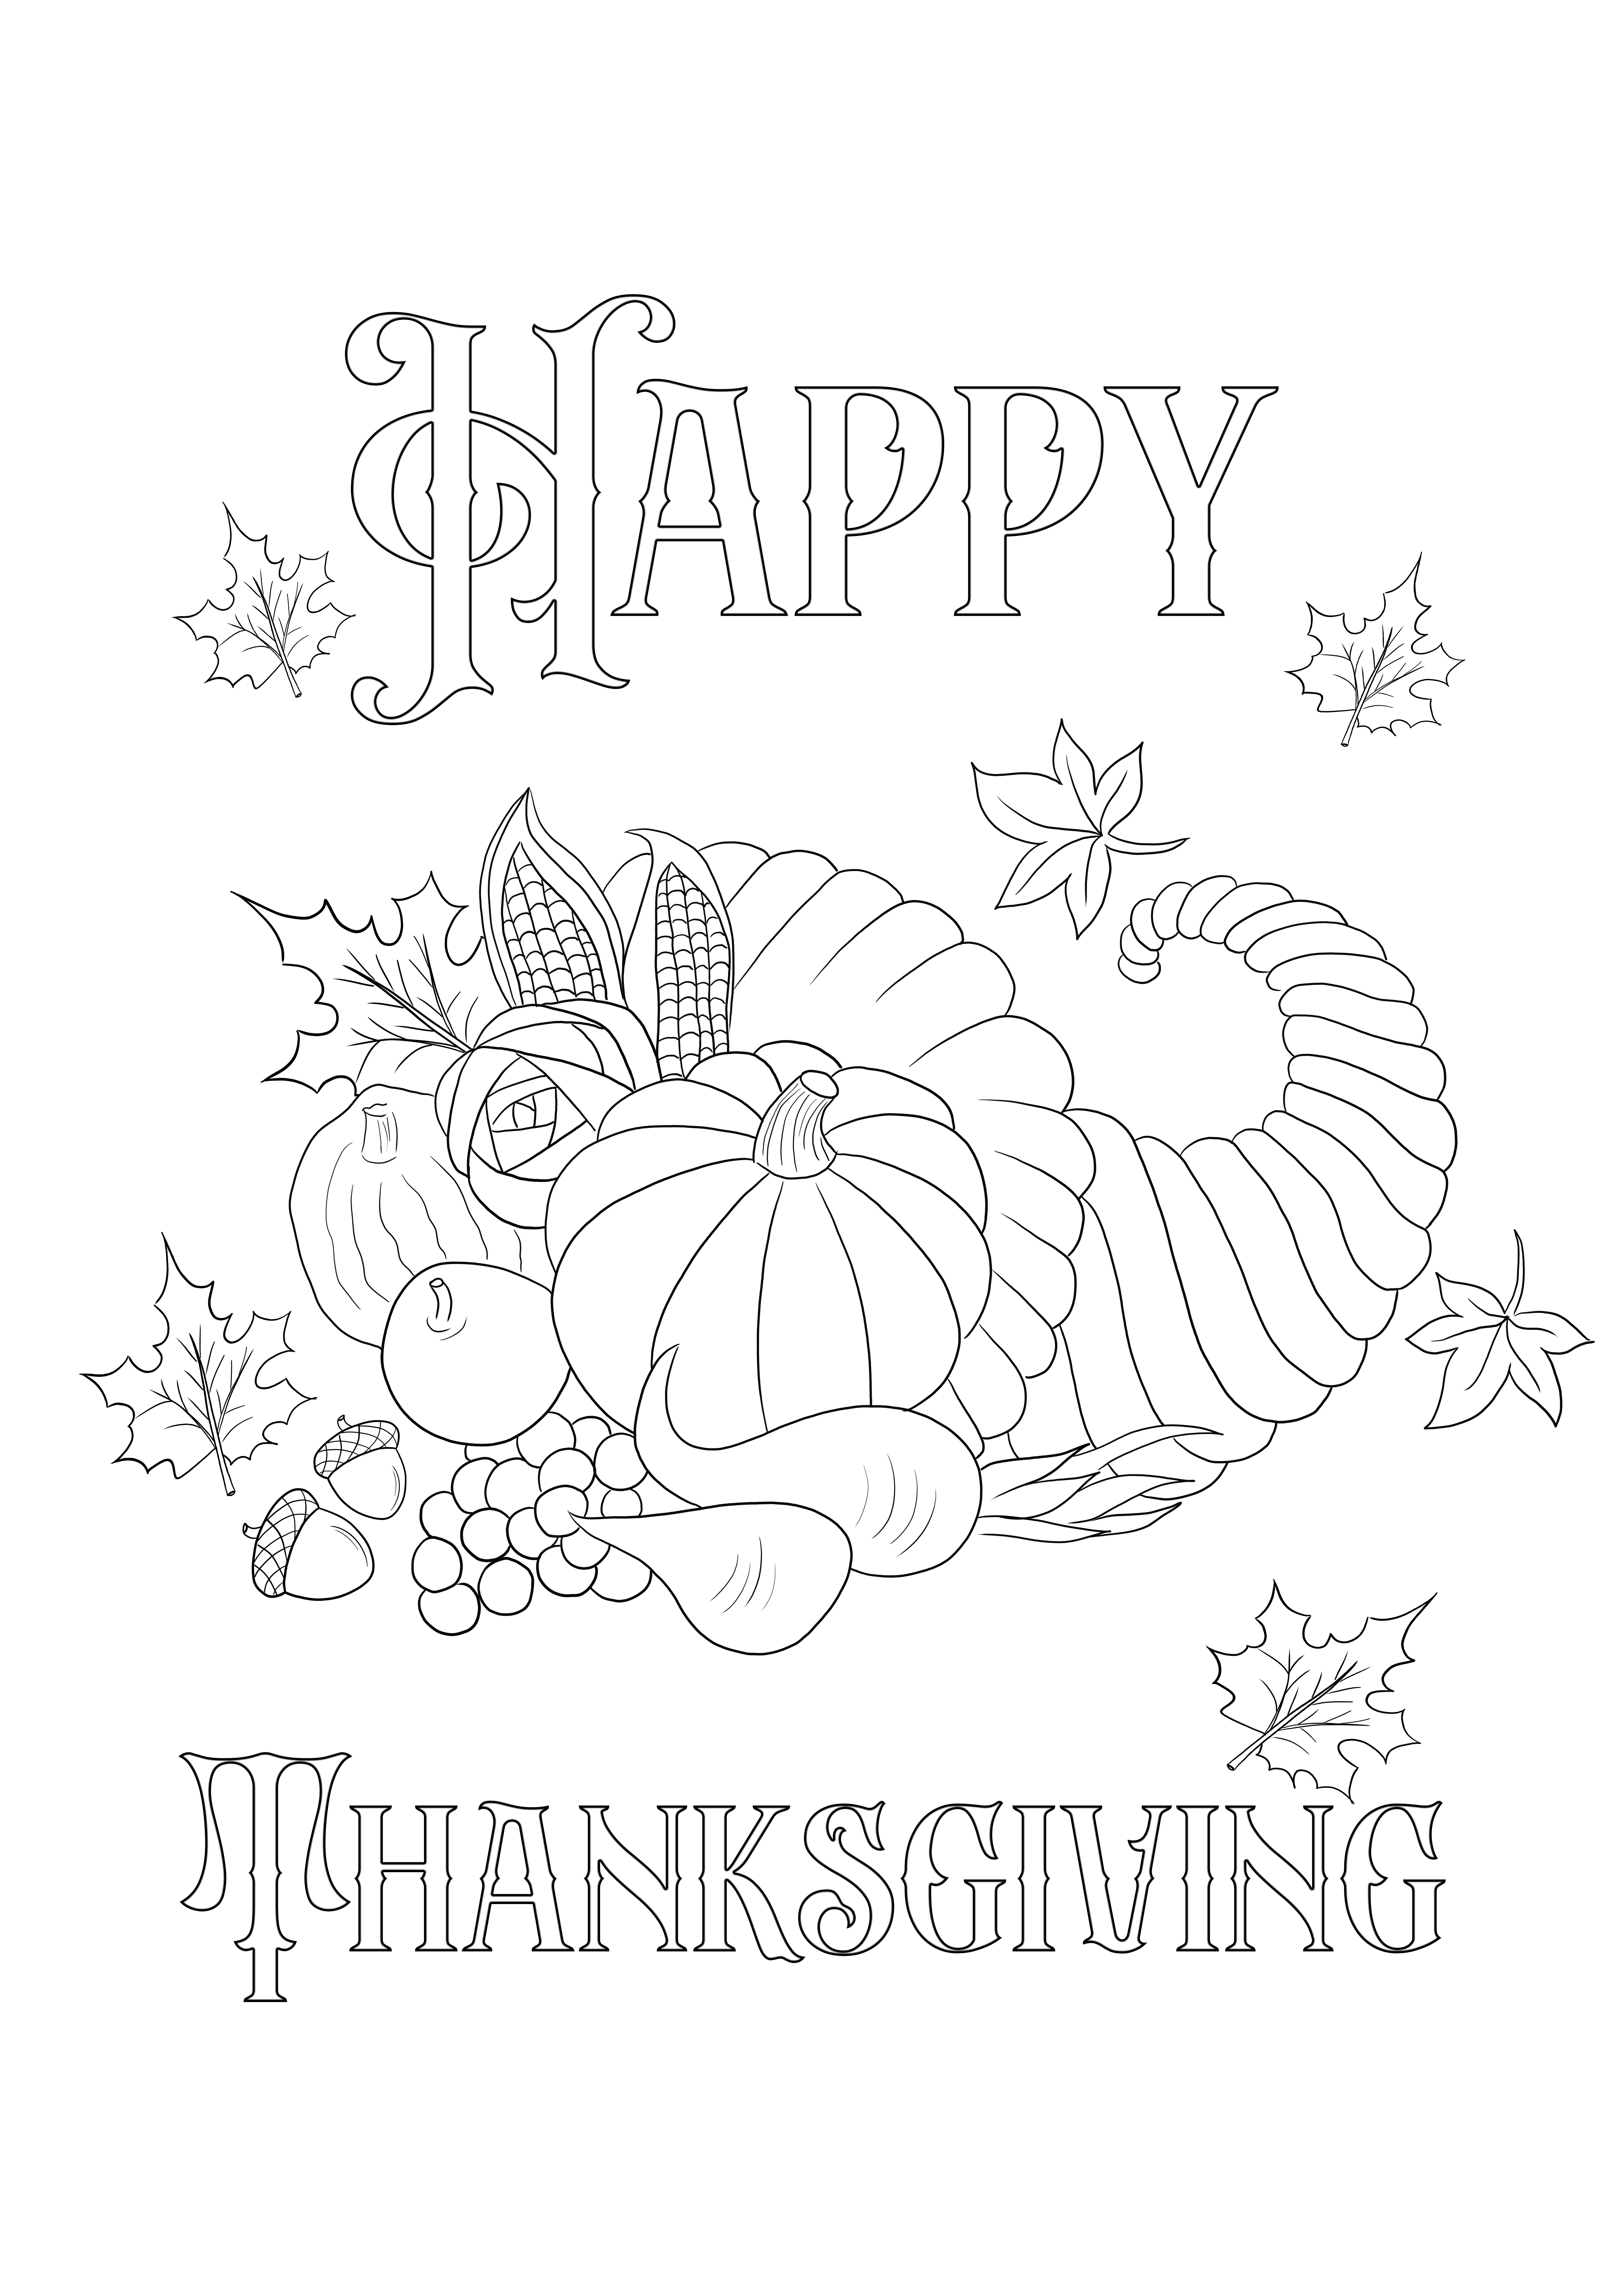 Kartu Thanksgiving yang dapat dicetak gratis untuk diwarnai untuk anak-anak dari segala usia